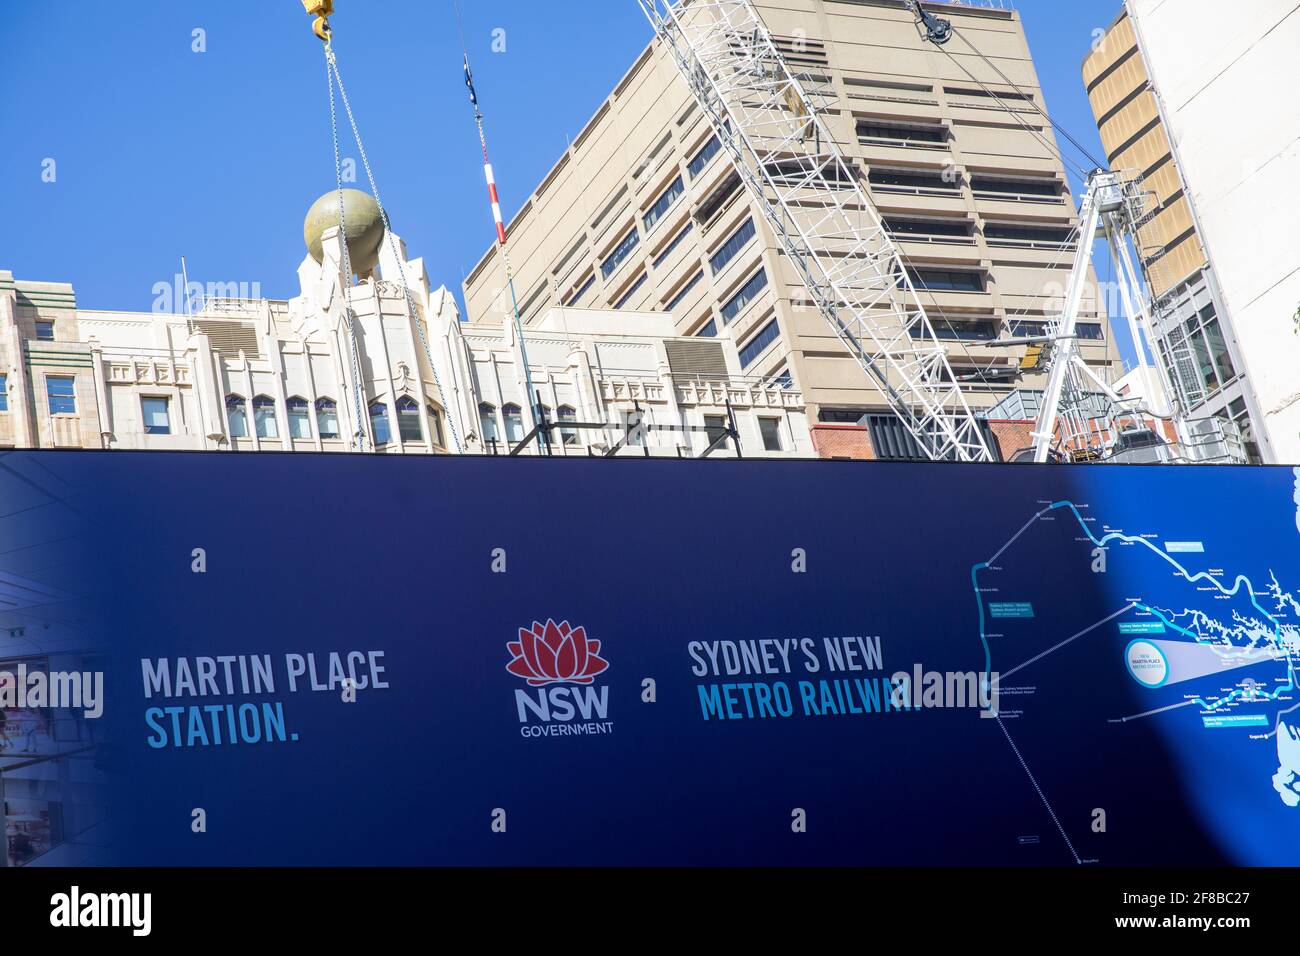 Il progetto di trasporto pubblico della metropolitana di Sydney include una nuova stazione ferroviaria A Martin Place nel centro di Sydney, NSW, Australia Foto Stock